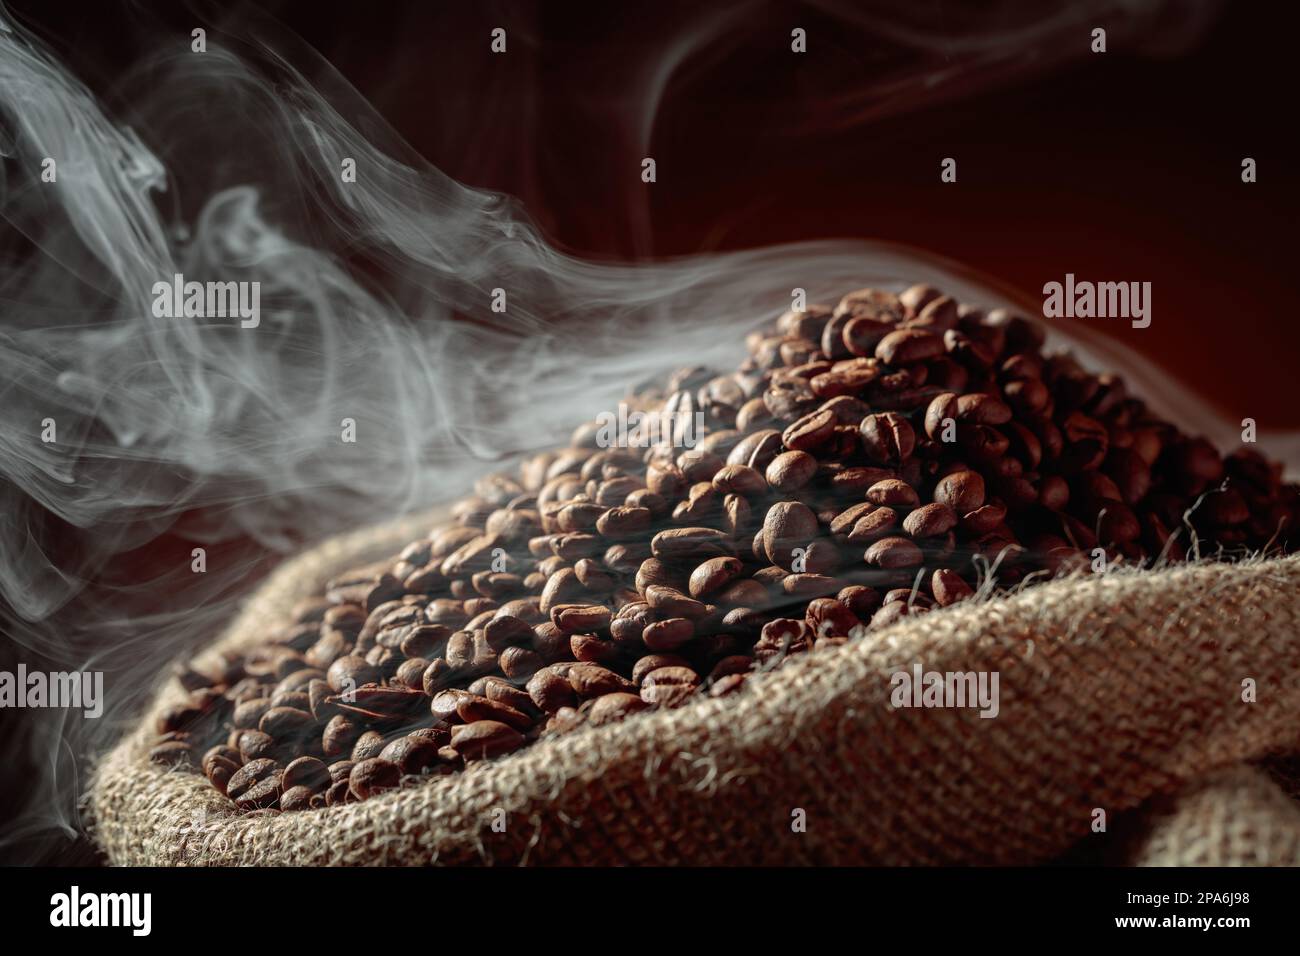 Mittelgeröstete Kaffeebohnen sind in einem Leinenbeutel rauchig. Stockfoto